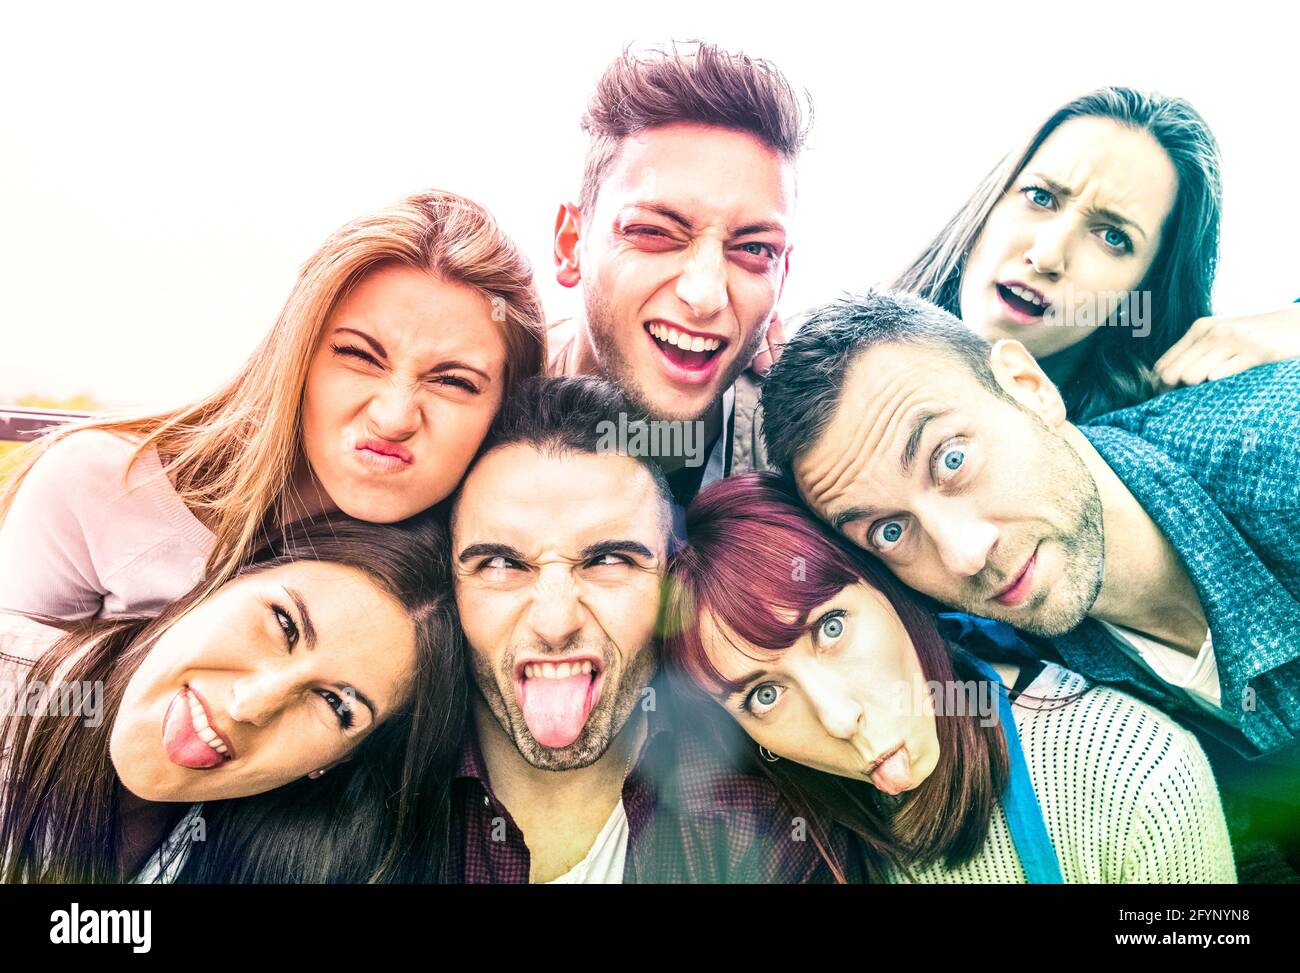 Multikulturelle Millennial-Freunde nehmen Selfie mit lustigen Gesichtern - Happy Youth Friendship Konzept mit Millennial Young Trendy People, die Spaß haben Stockfoto